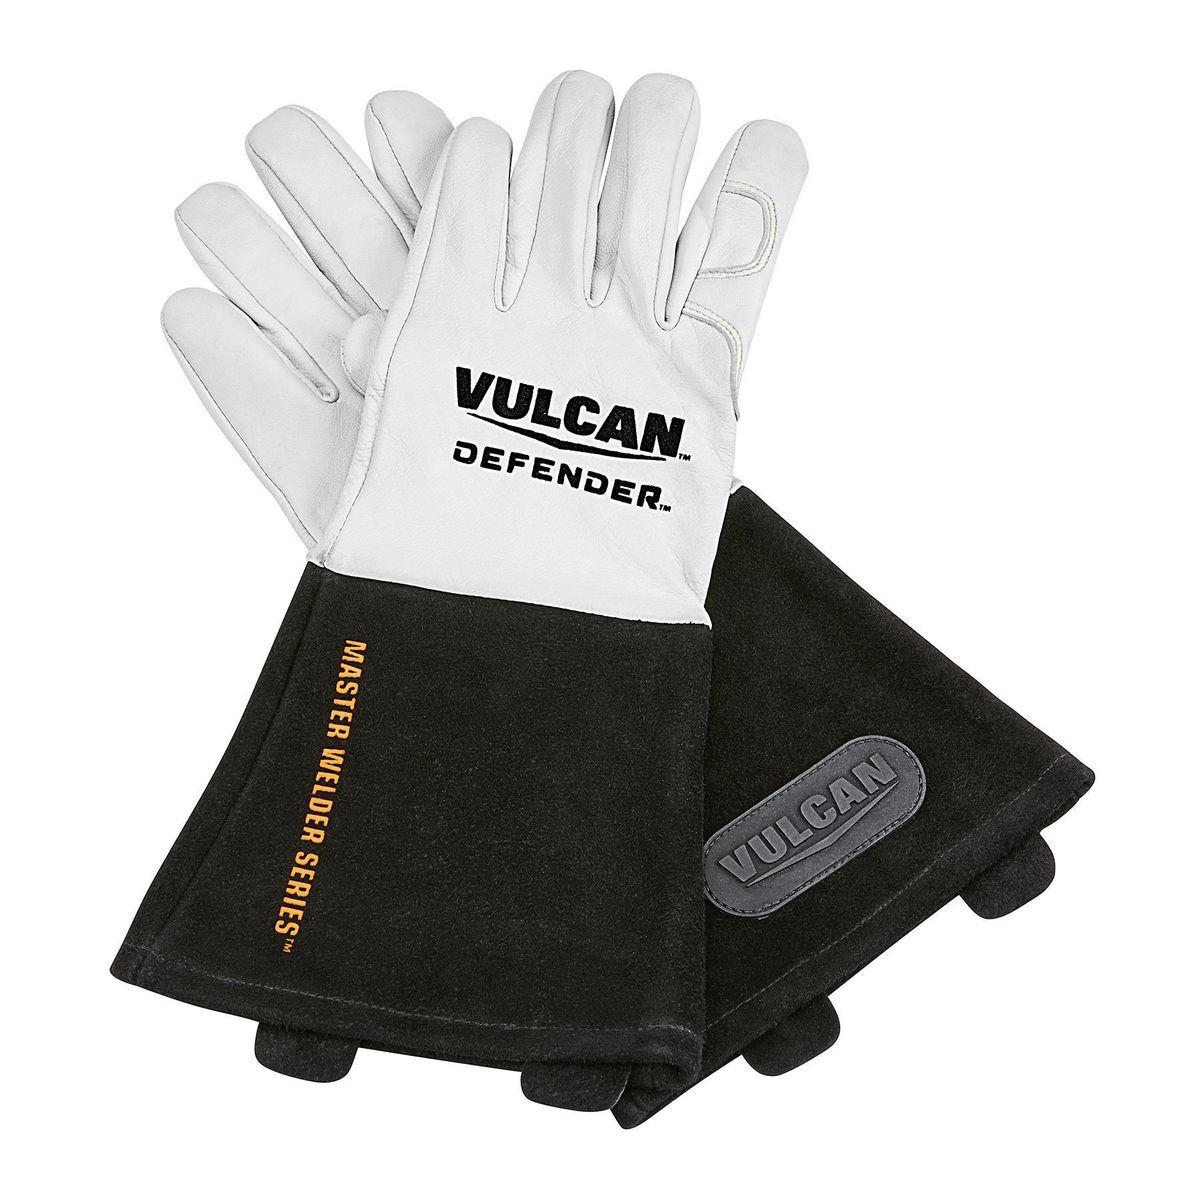 VULCAN DEFENDER Professional TIG Welding Gloves, Large